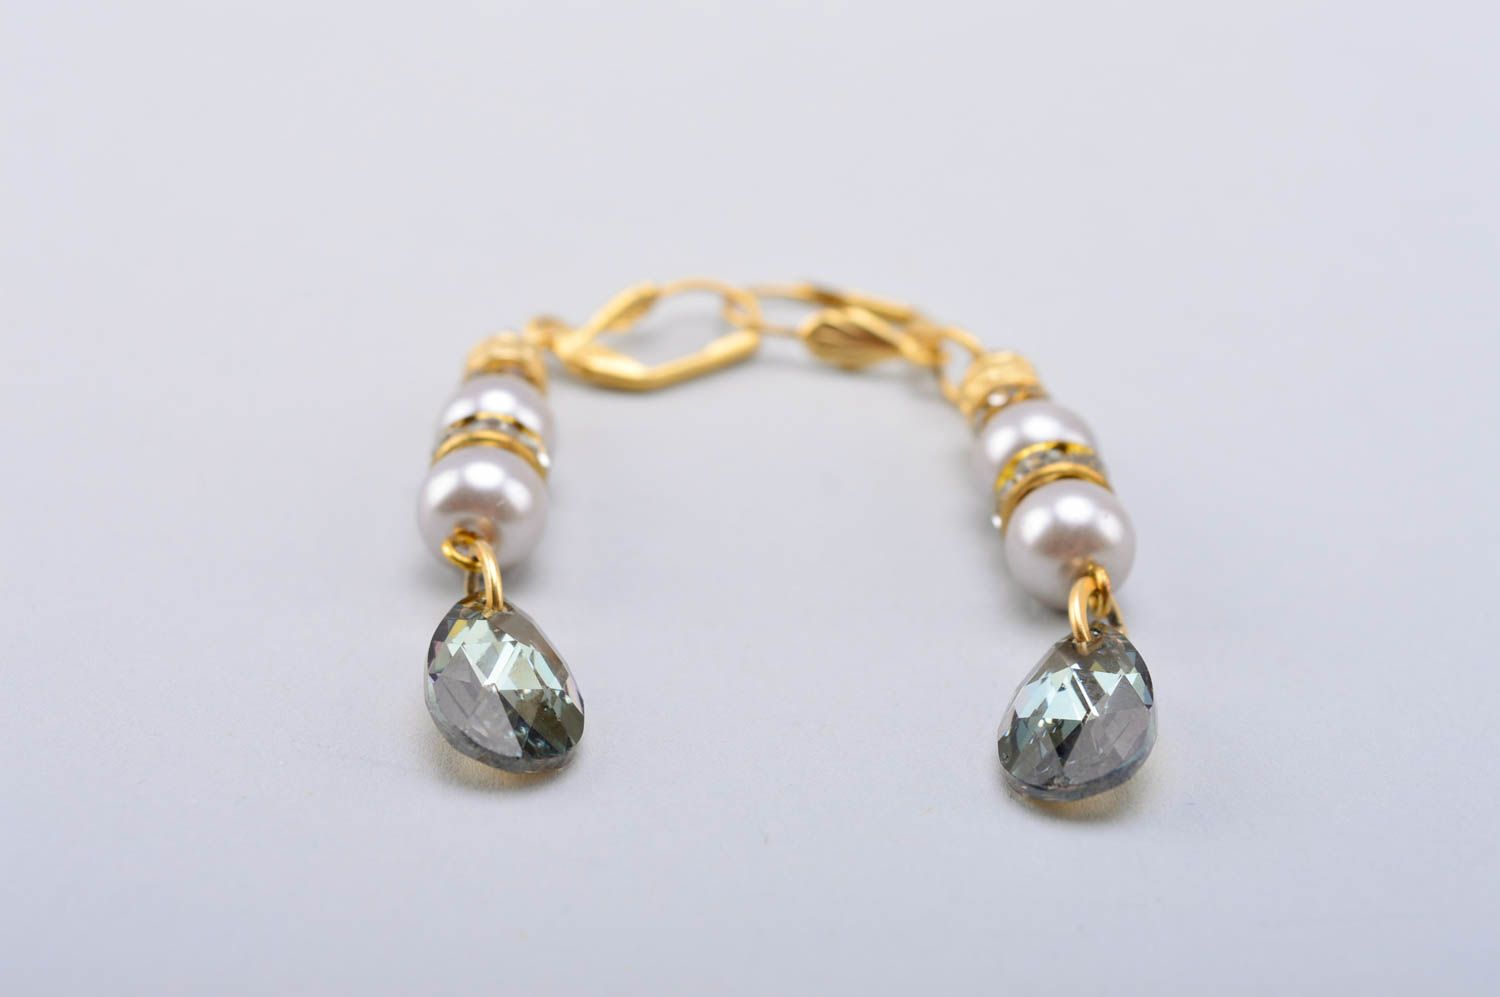 Handmade beaded earrings pearl earrings crystal earrings gifts for her photo 2